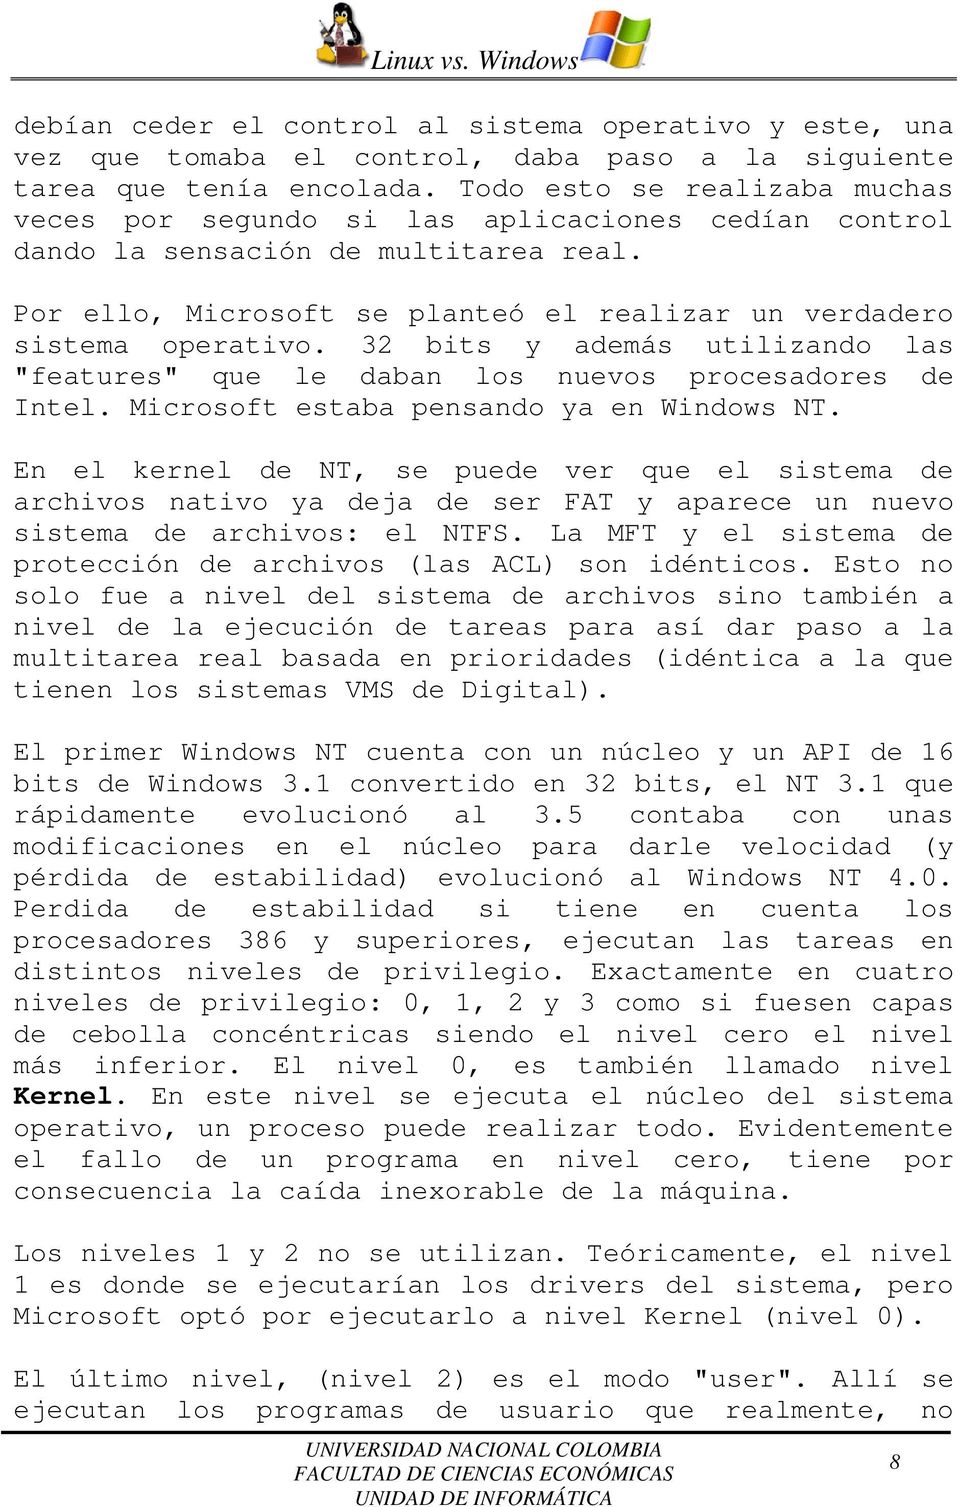 32 bits y además utilizando las "features" que le daban los nuevos procesadores de Intel. Microsoft estaba pensando ya en Windows NT.